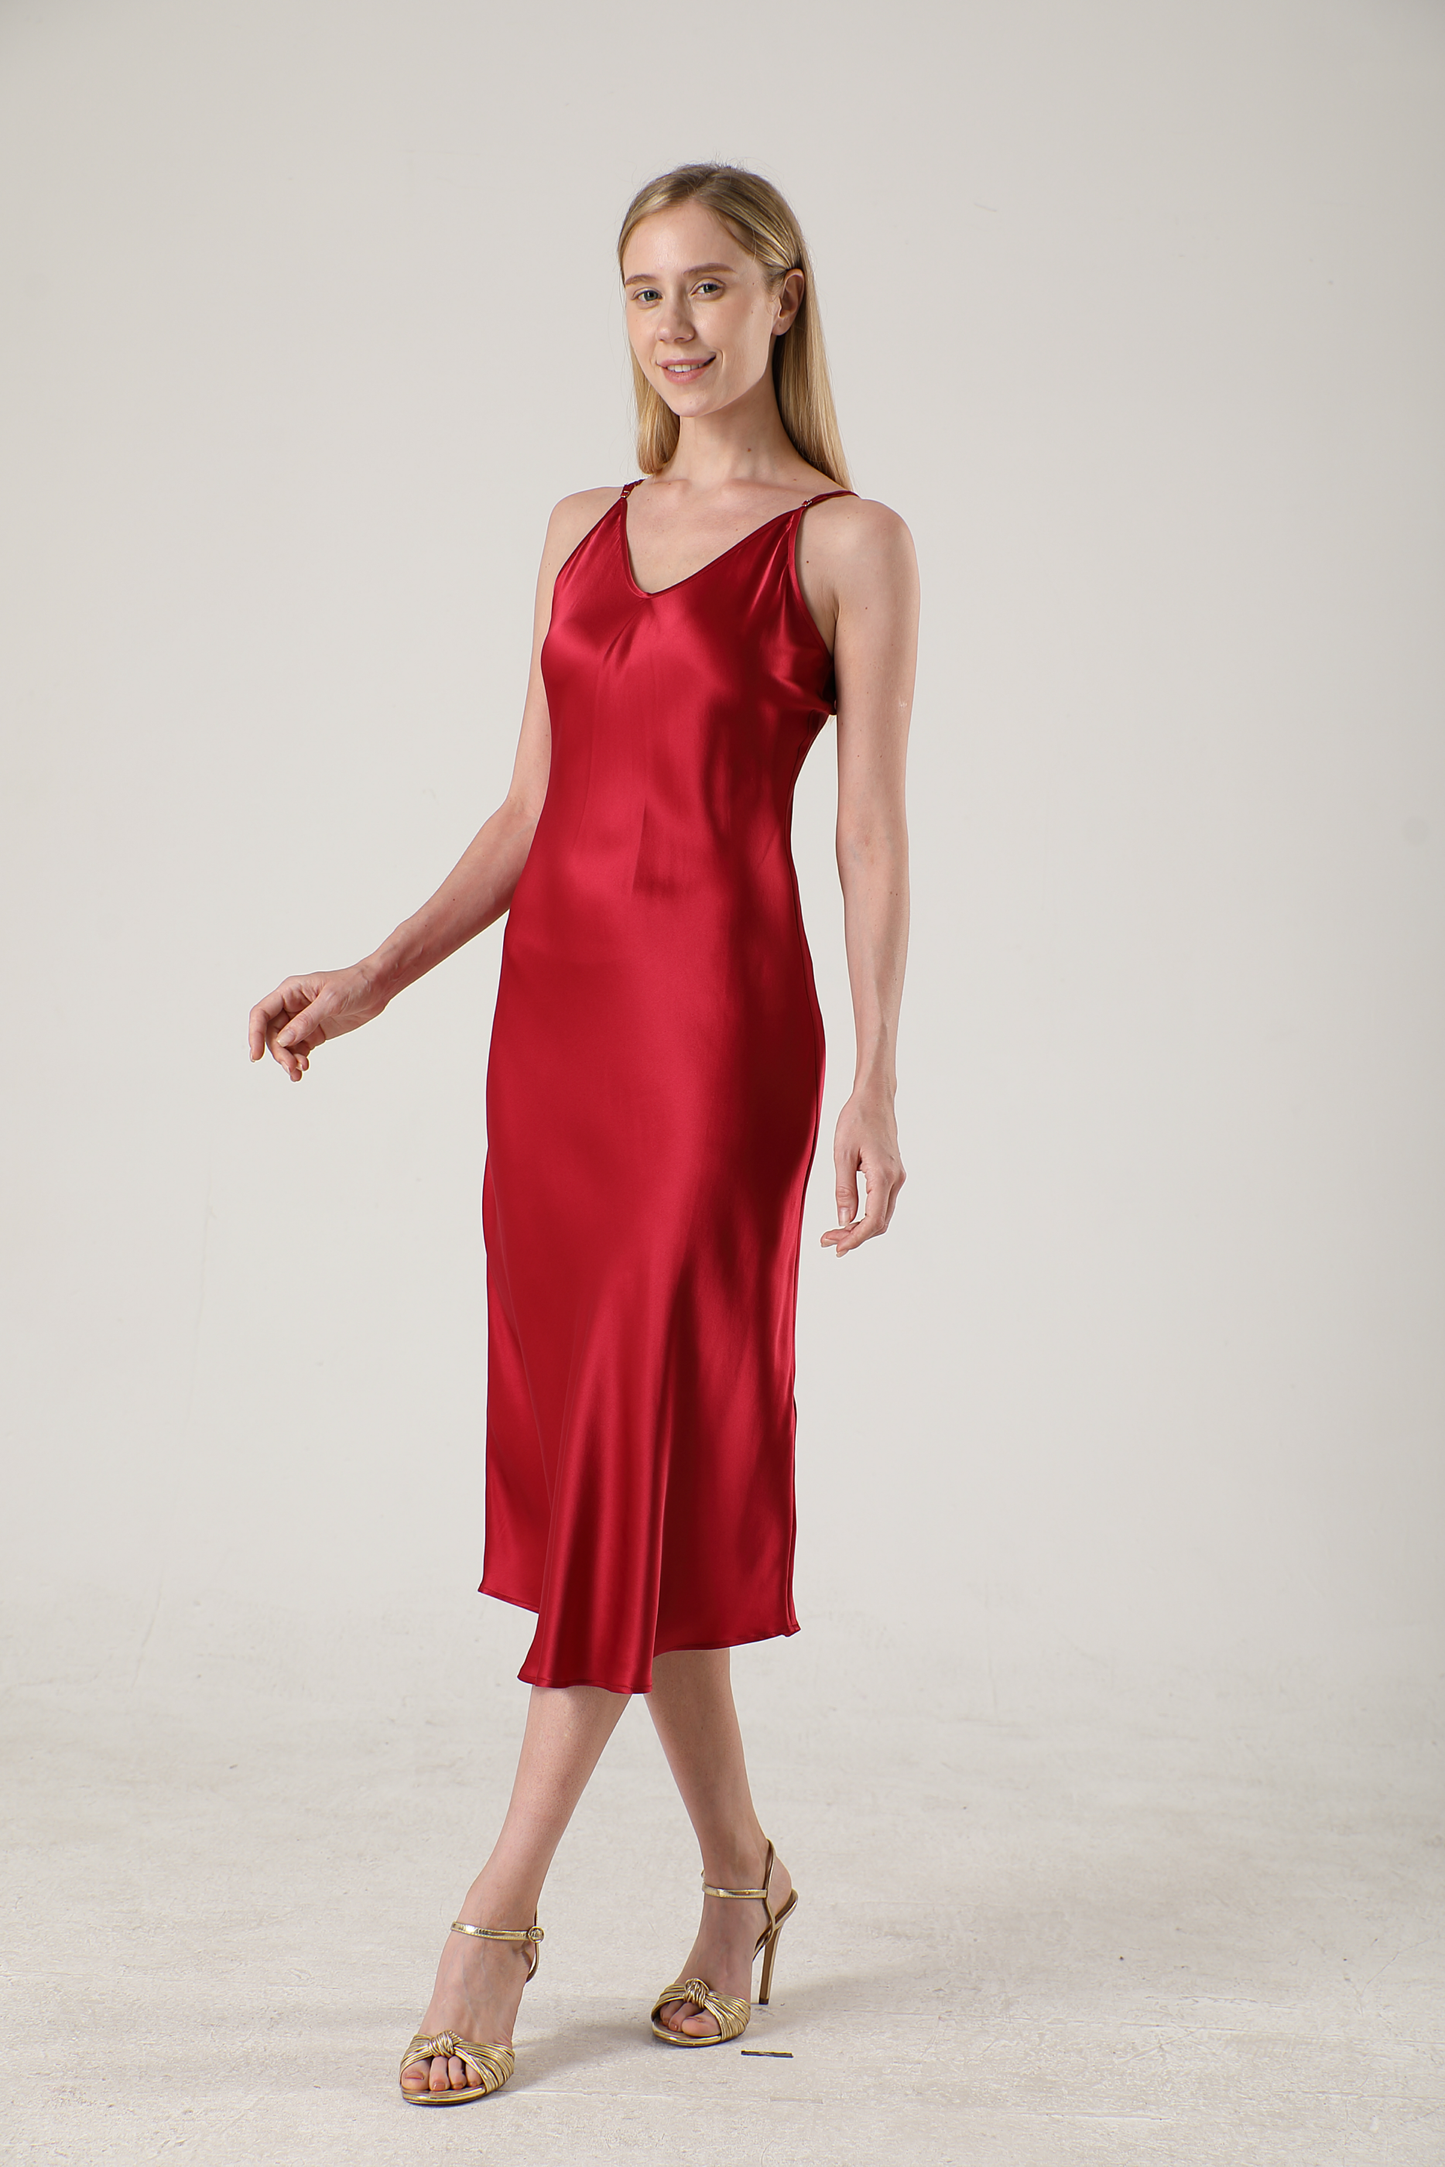 Luxury women's silk dress mid-length v-neck